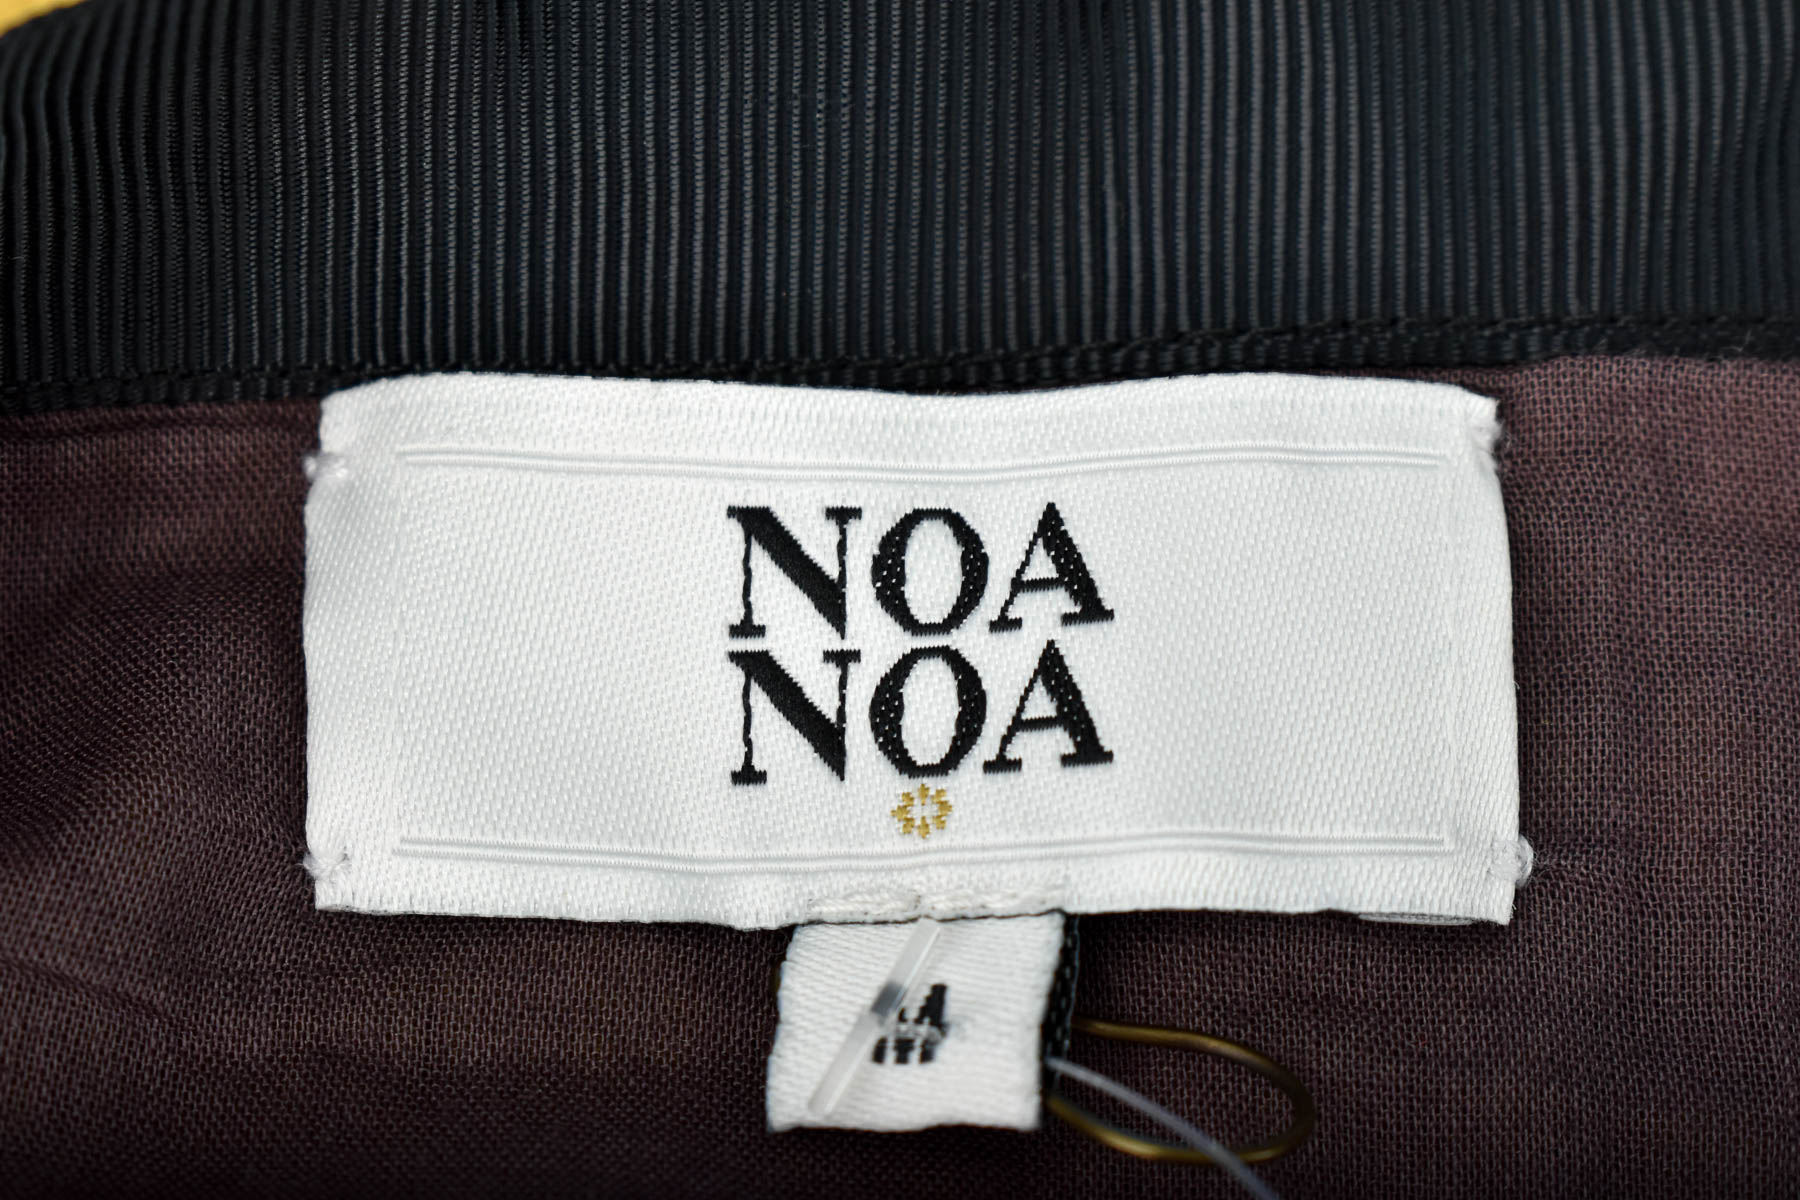 Пола - NOA NOA - 2